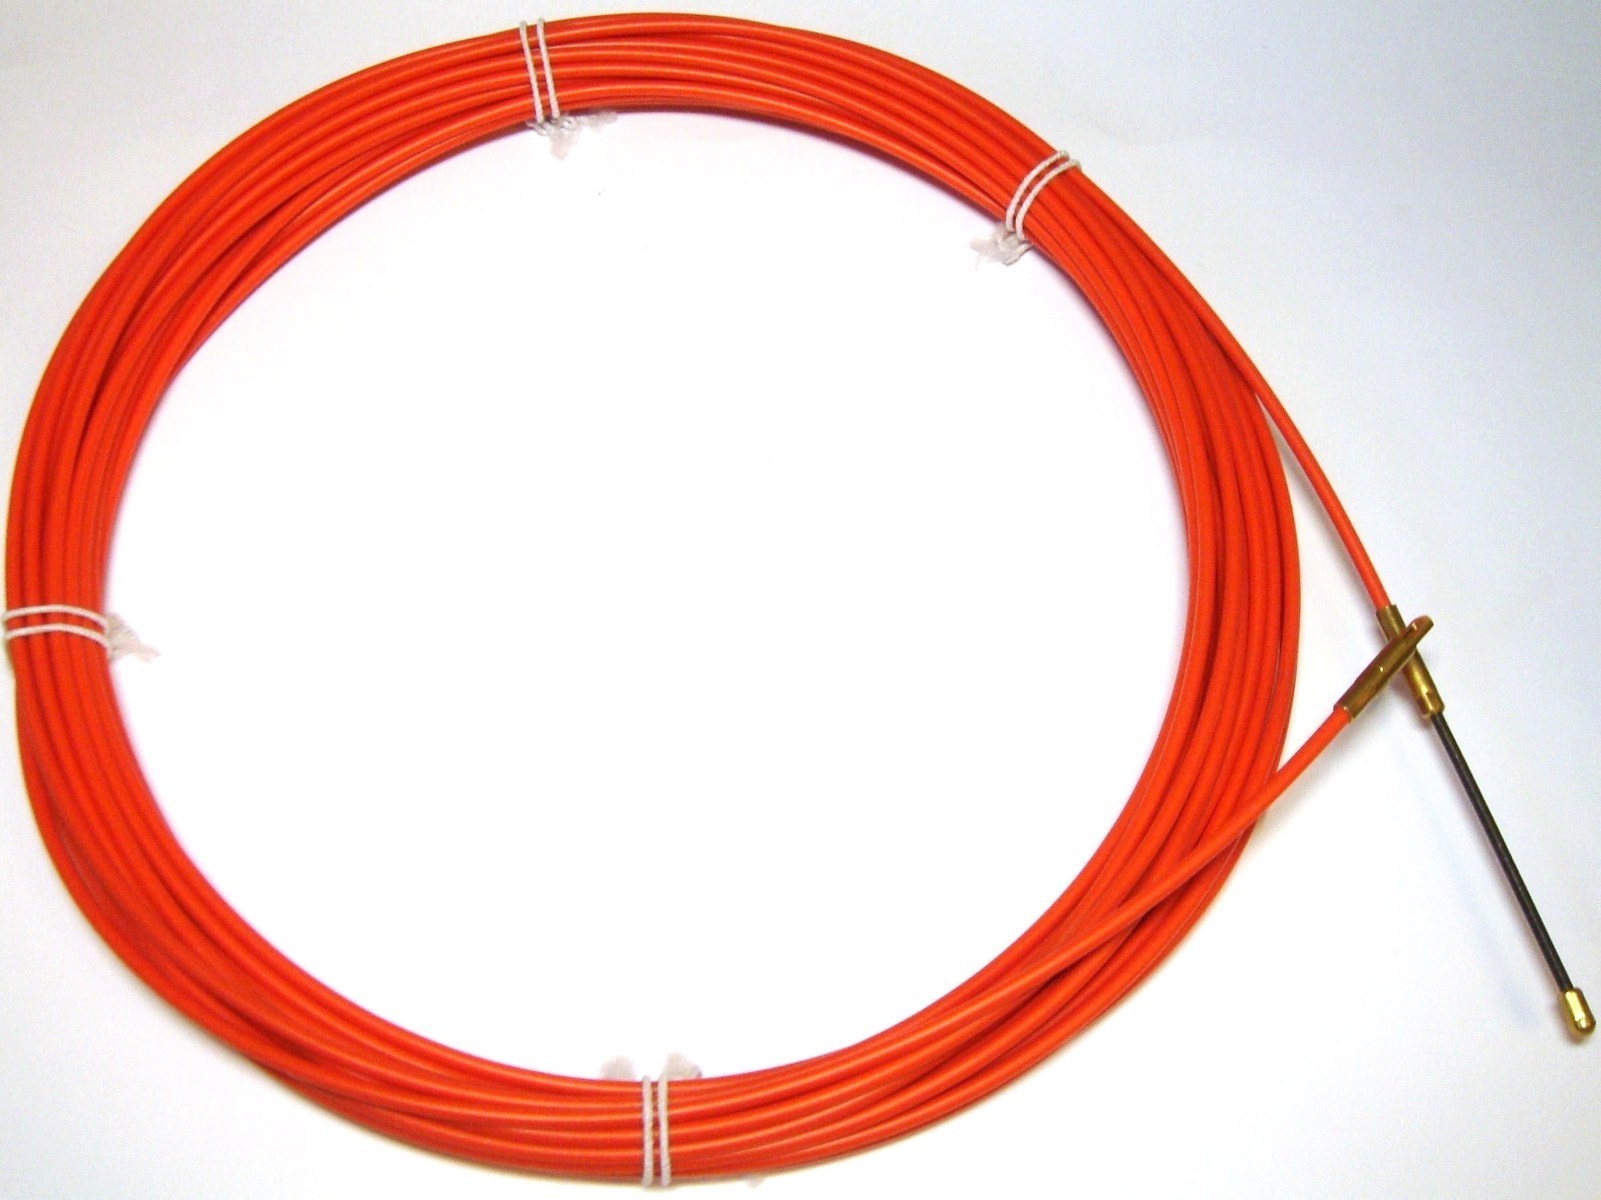  металлический для протяжки кабеля Ø4мм, 20м, Estiare Anguila .